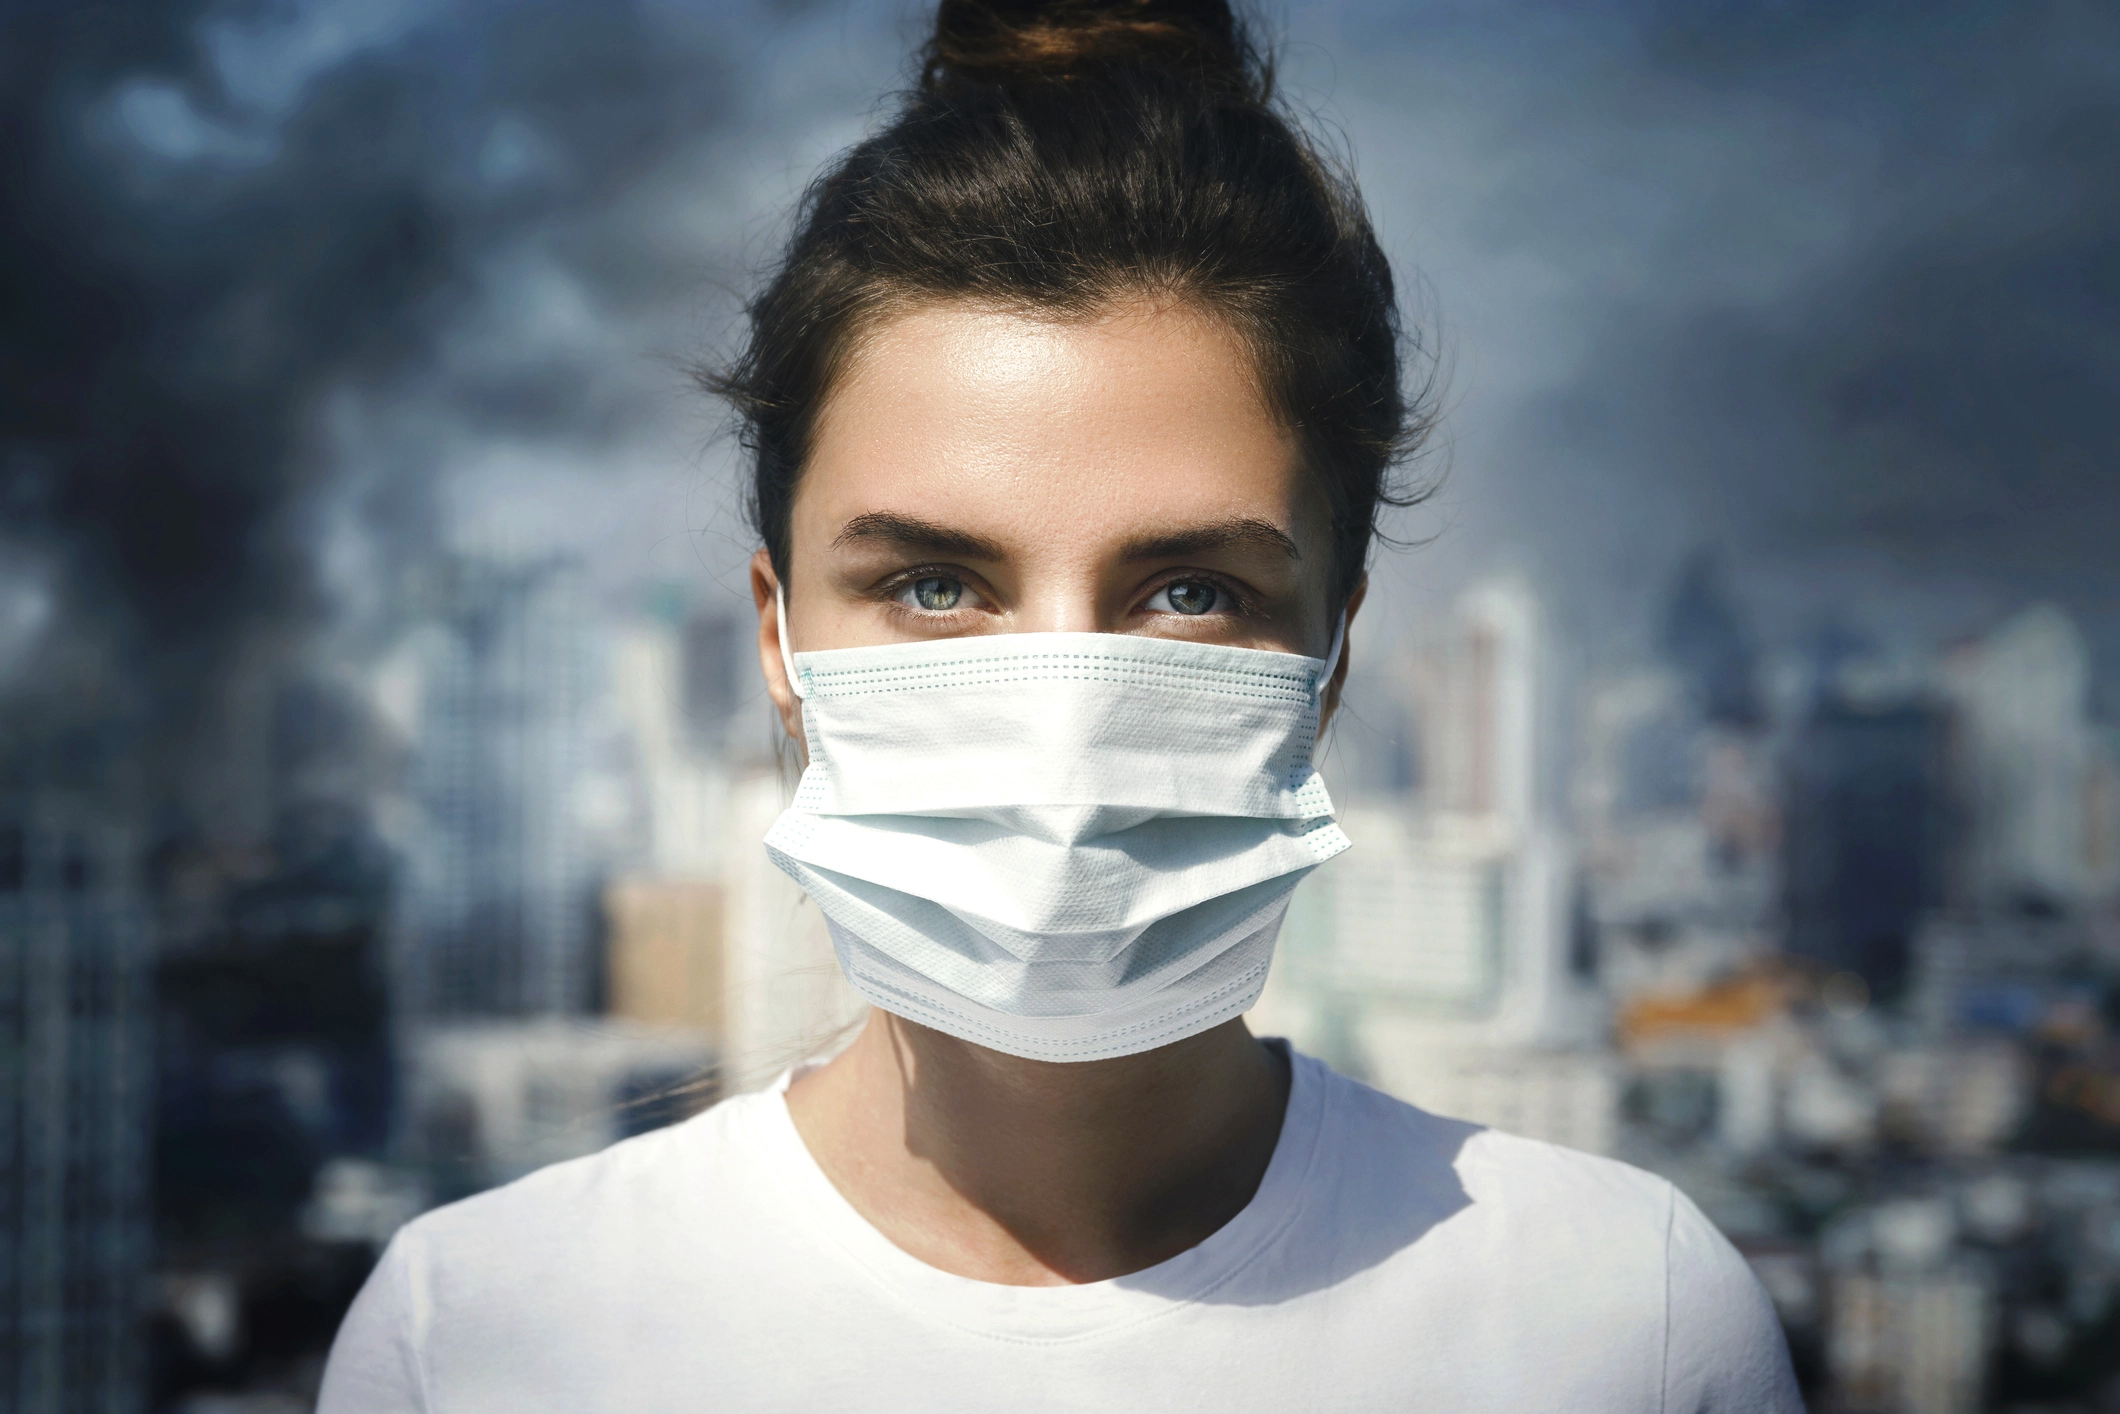 دراسة حديثة النساء هنّ الأكثر تضرراً من الرجال بسبب استنشاق الهواء الملوث